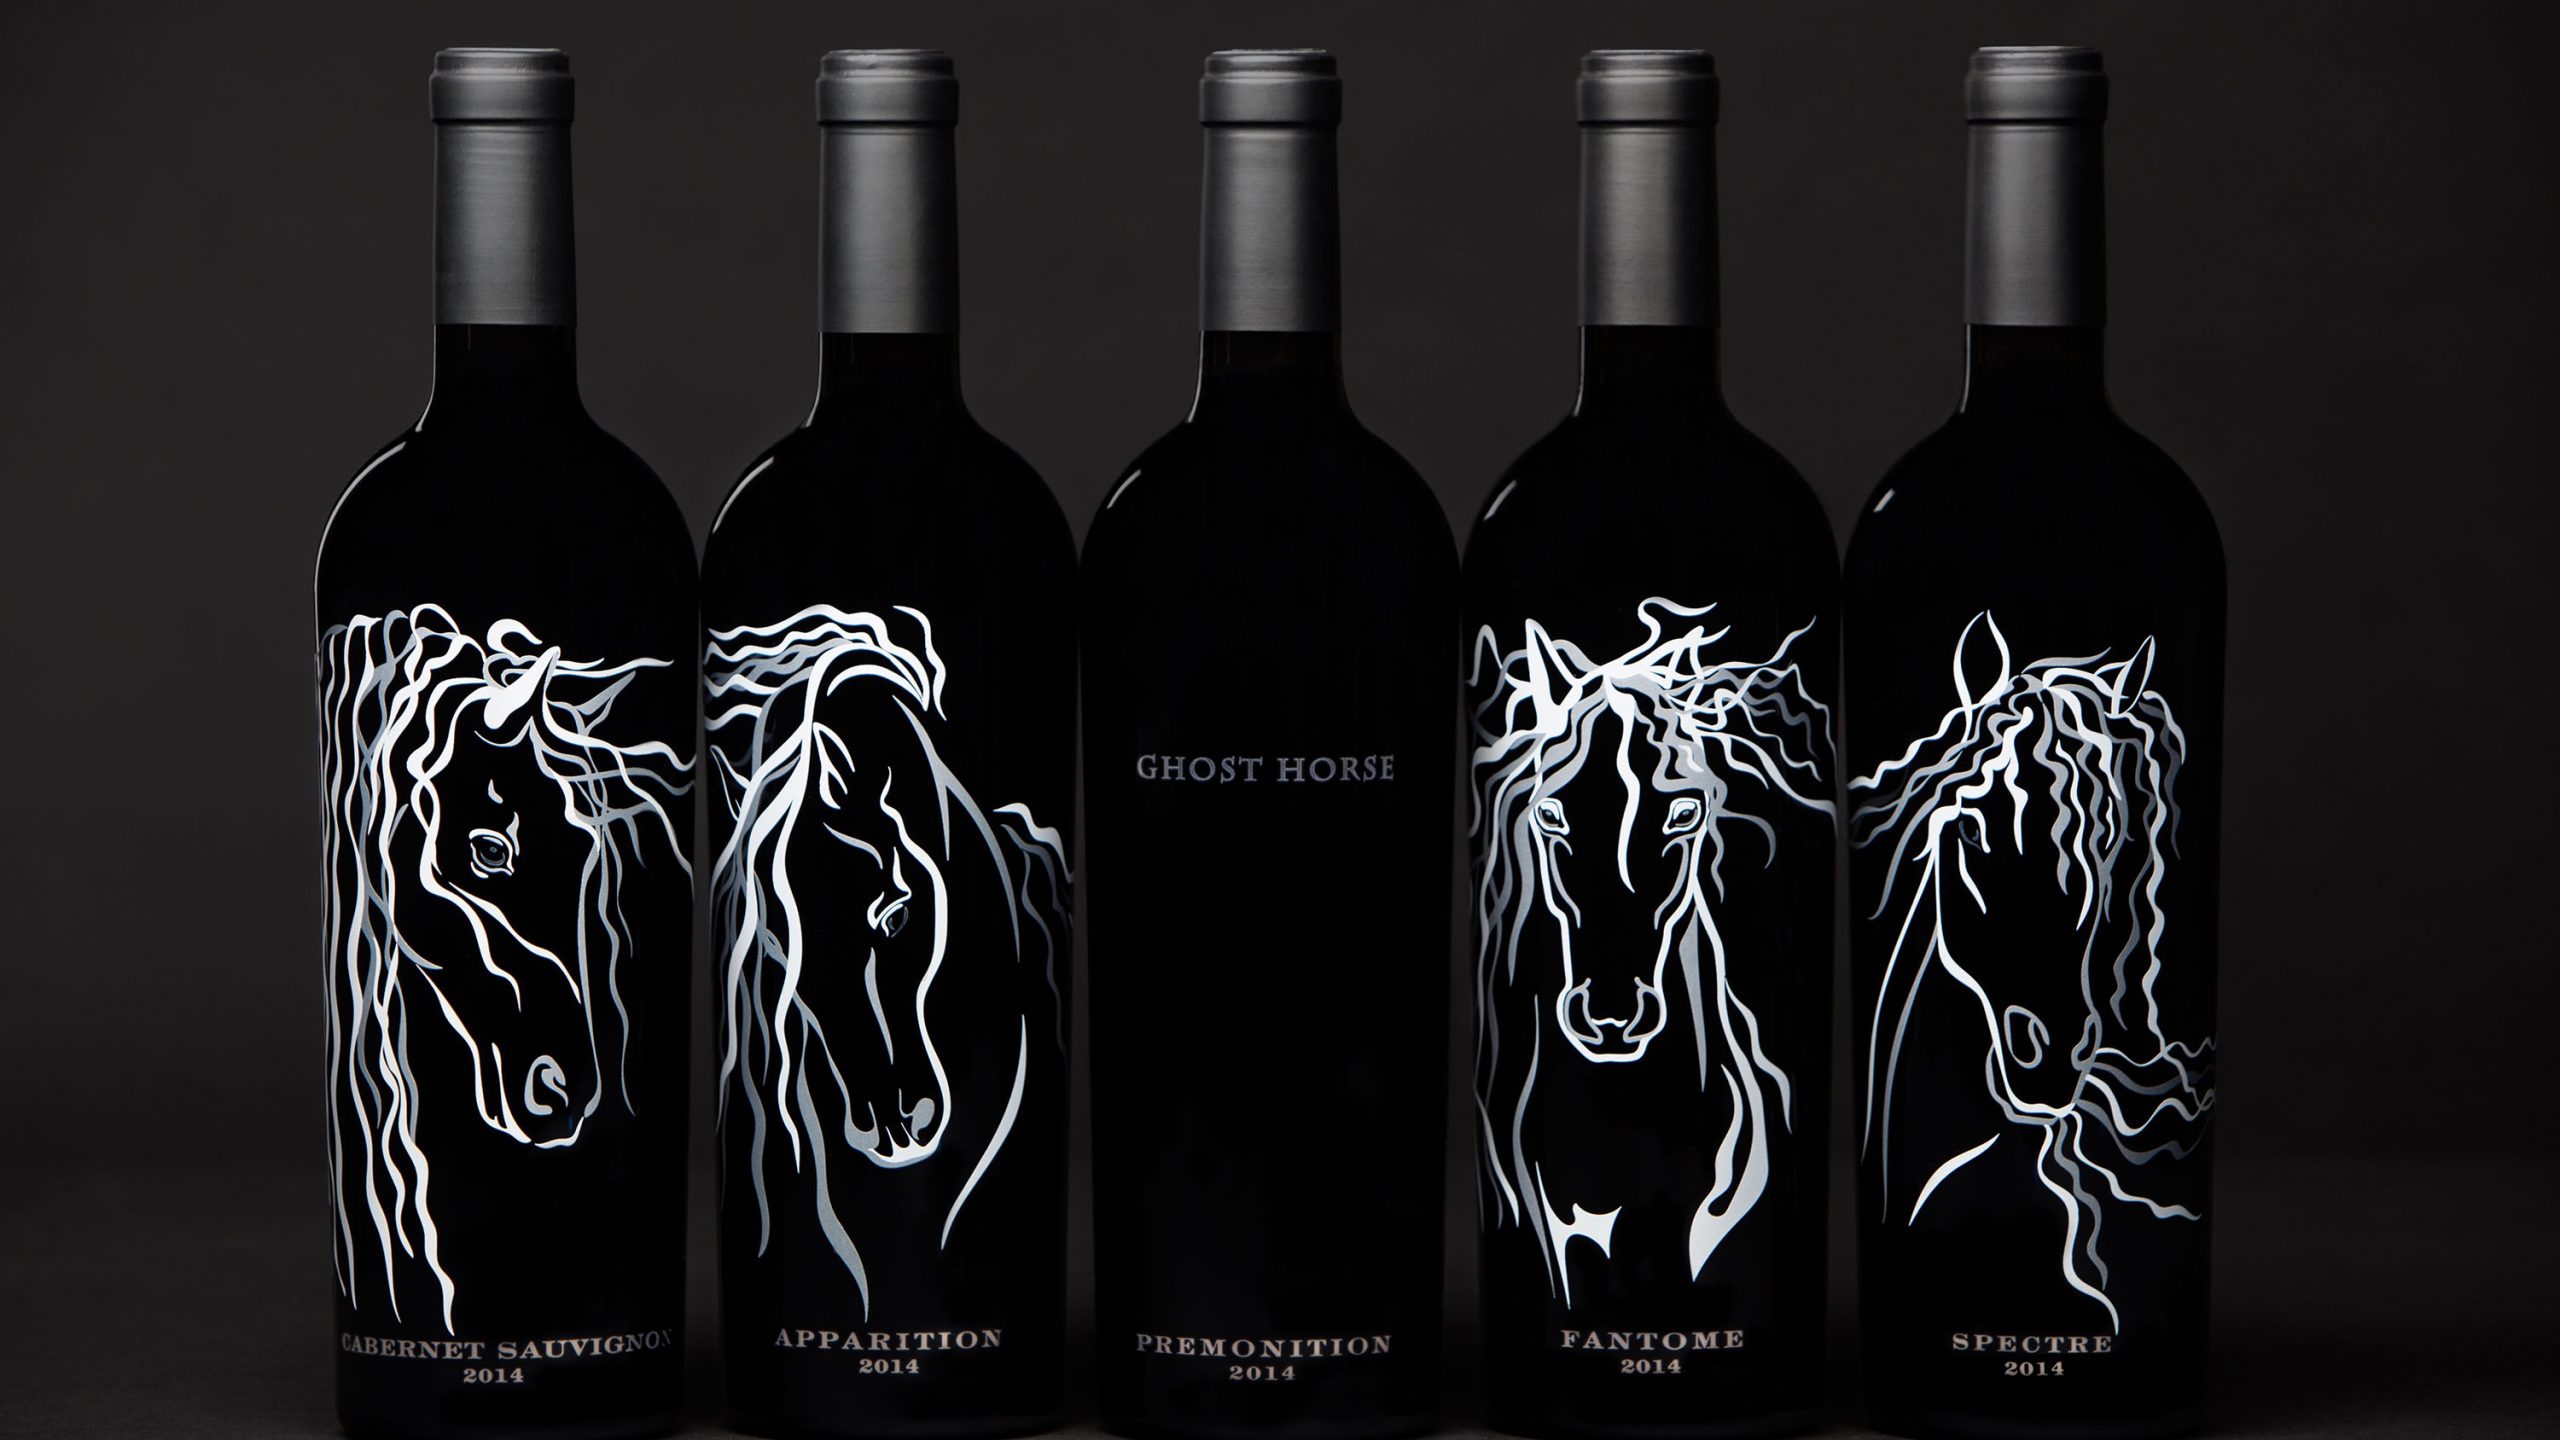 Série de vinhos “Ghost Horse” se tornou sensação cult dos Estados Unidos 